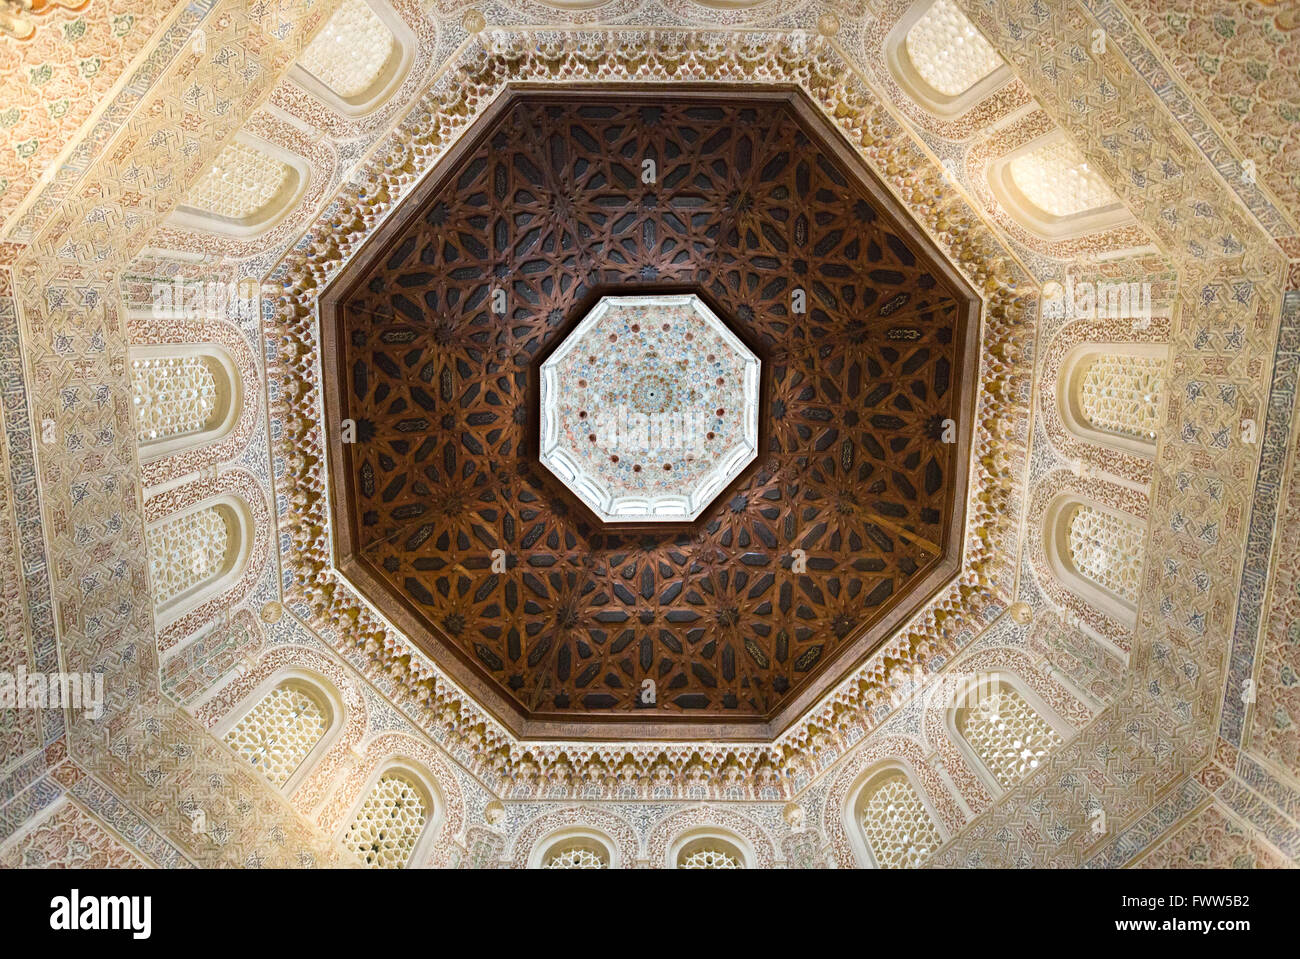 Vue sur le spectaculaire plafond et murs de la Madraza de Grenade, Espagne Banque D'Images